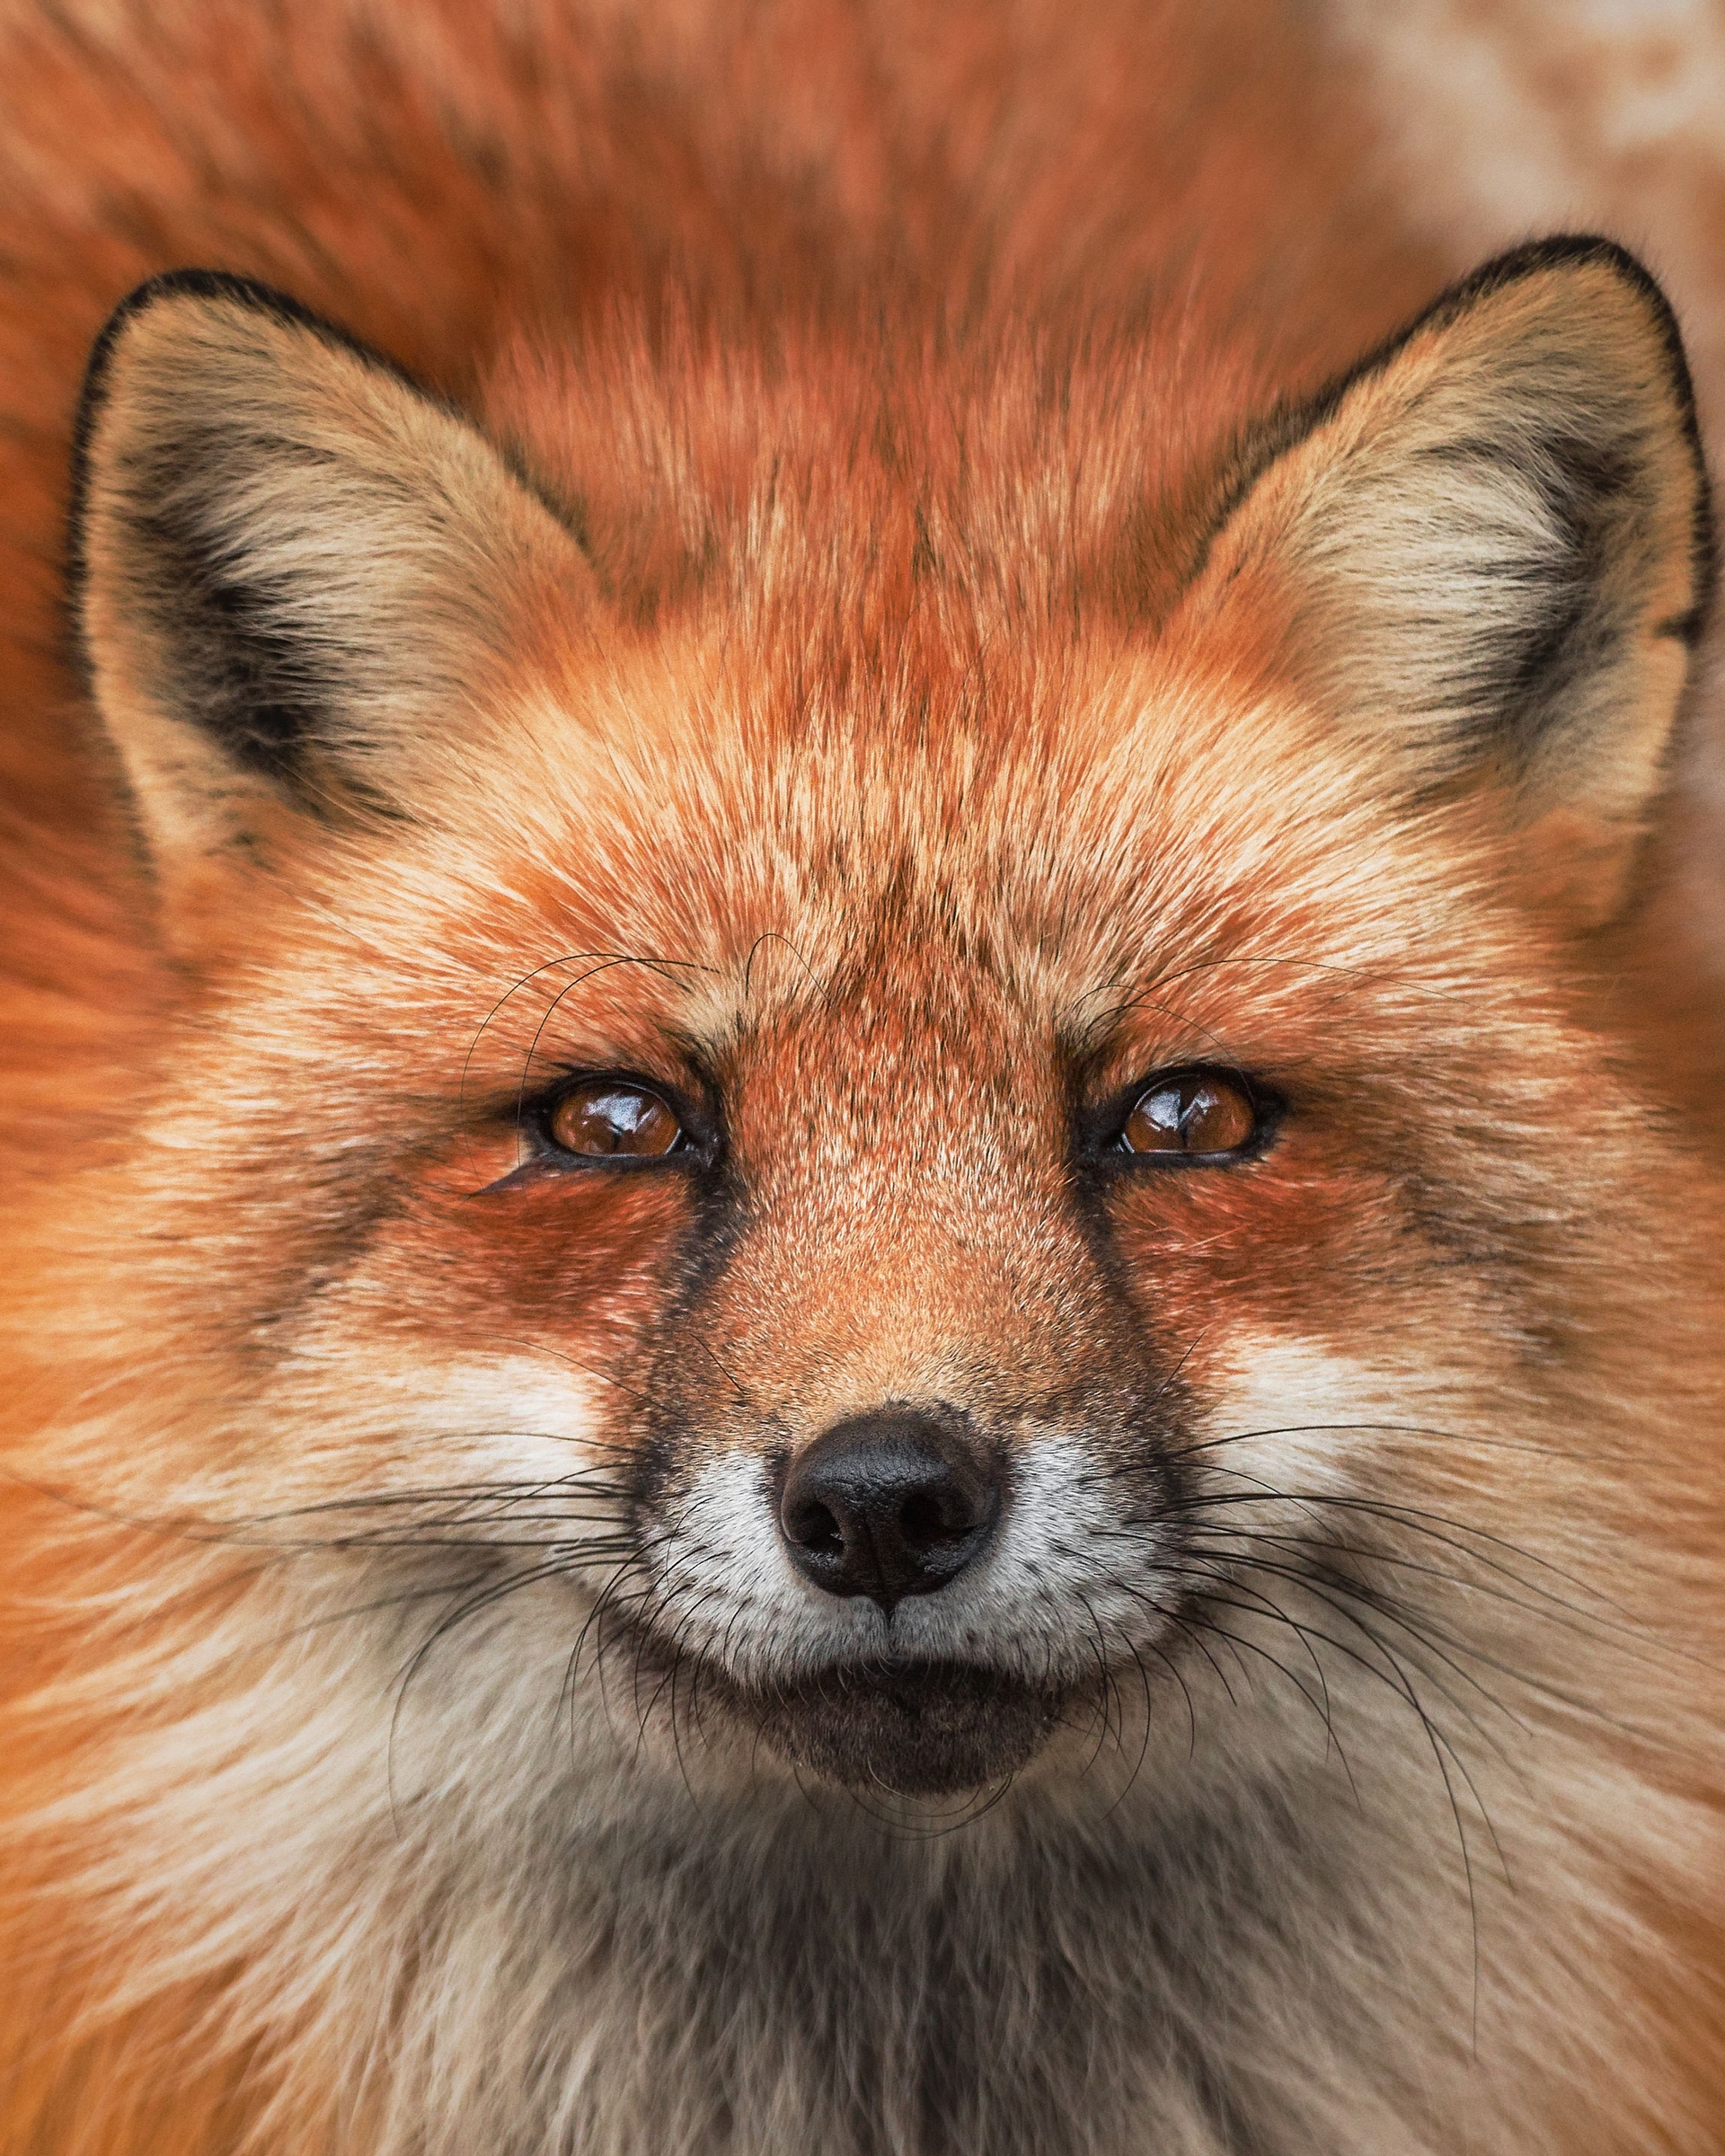 這隻住在藏王狐狸村裡的赤狐樣子非常帥氣。藏王狐狸村是位於日本仙台市的野生狐狸保護地。